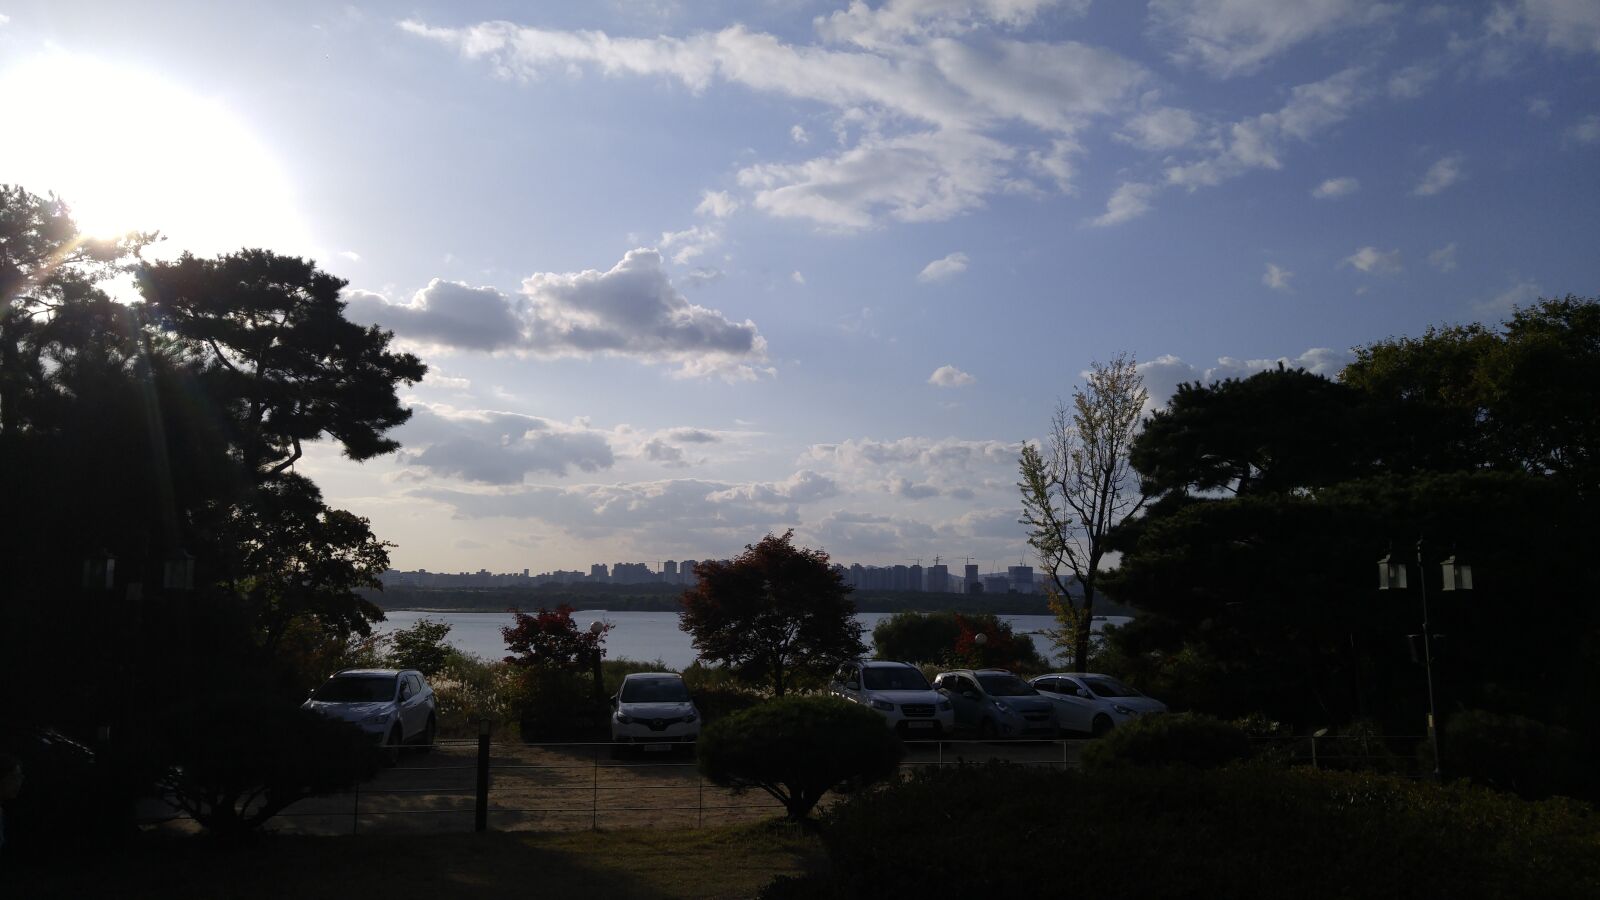 LG G4 sample photo. Sky, cloud, autumn photography